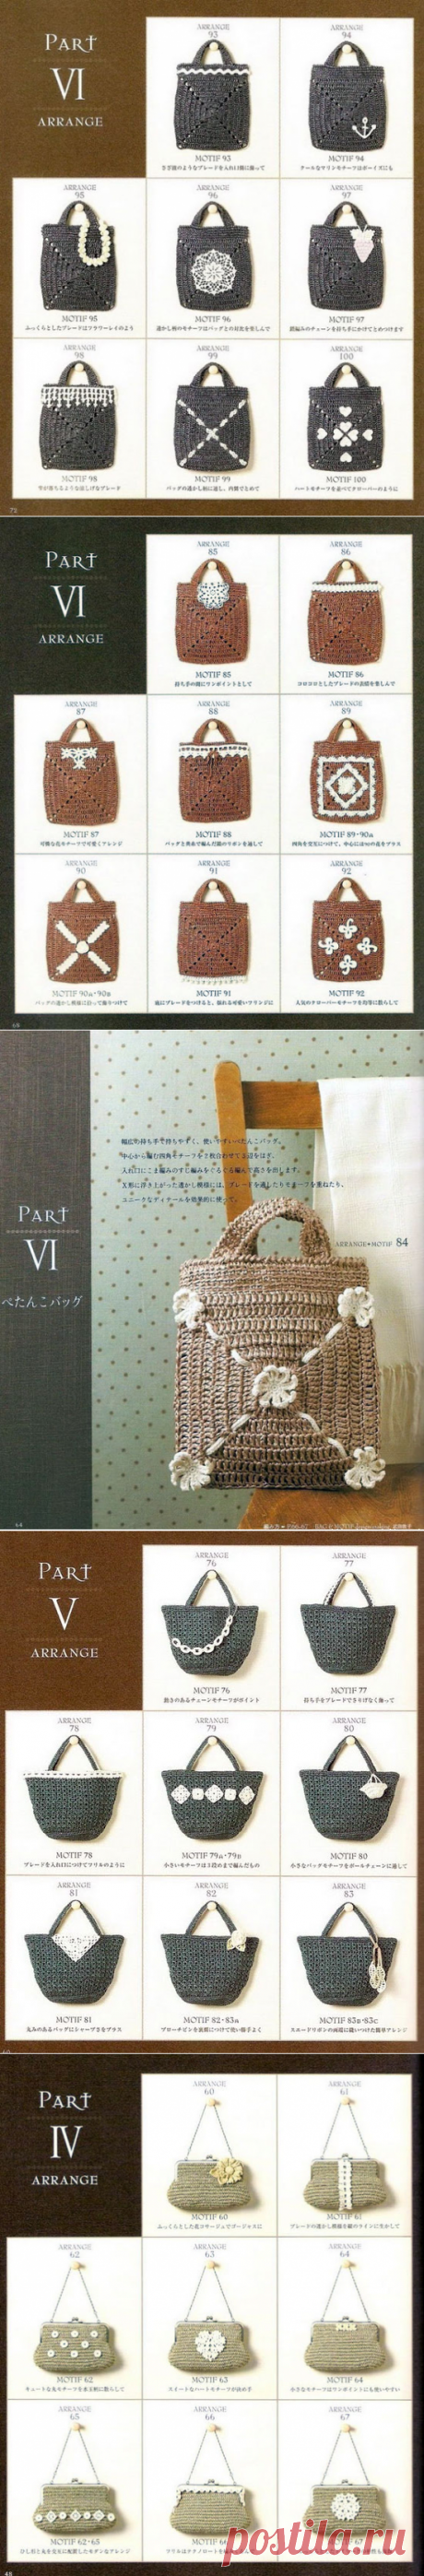 Альбом «Вязаные сумки из пакетов от японских масериц»